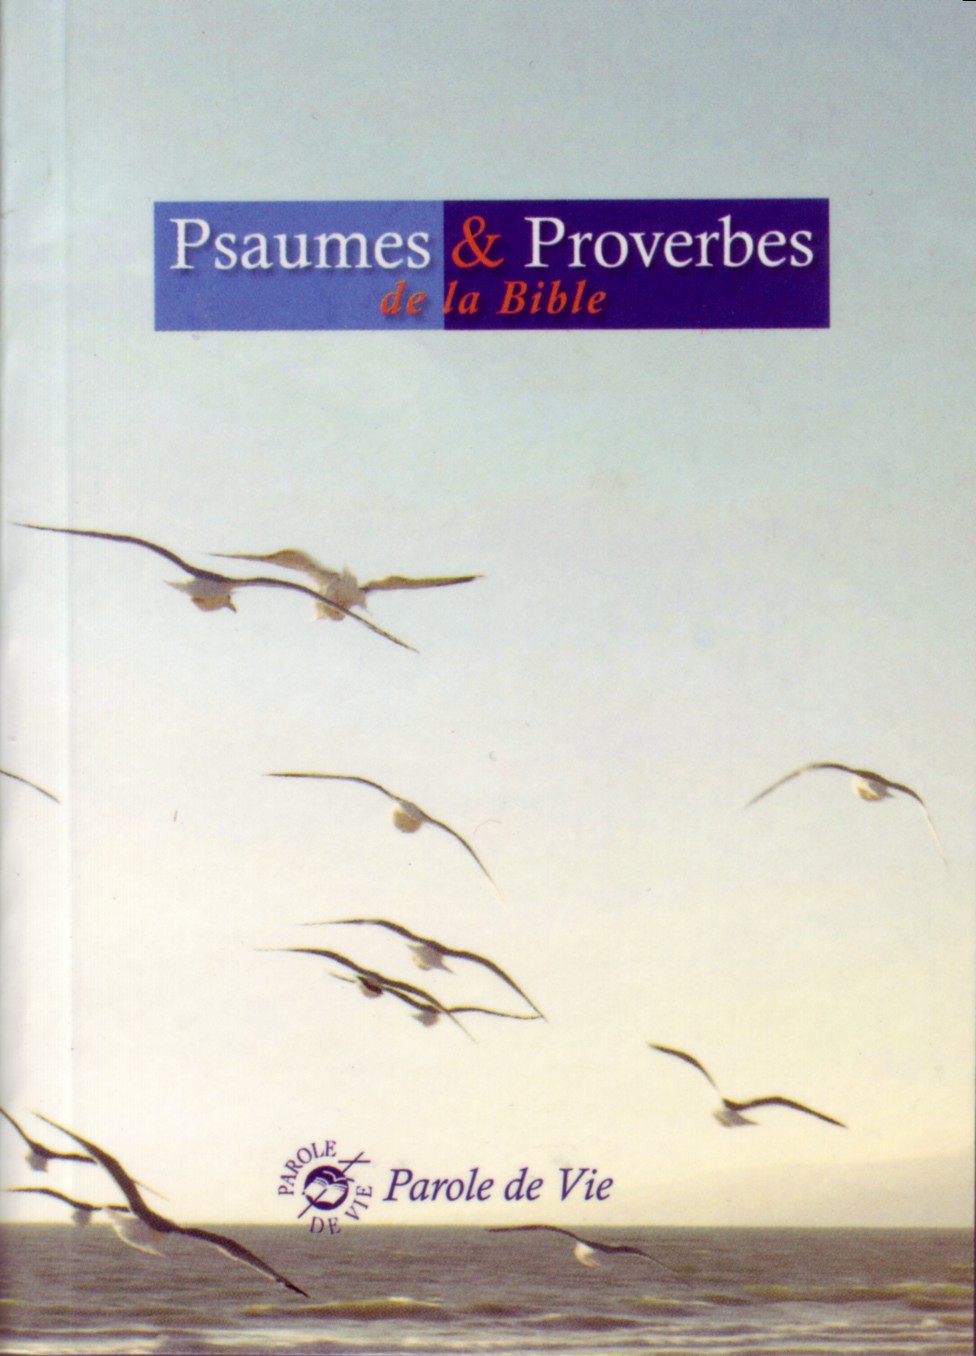 Psaumes & Proverbes, Parole de Vie - broché, mini, illustré bleu